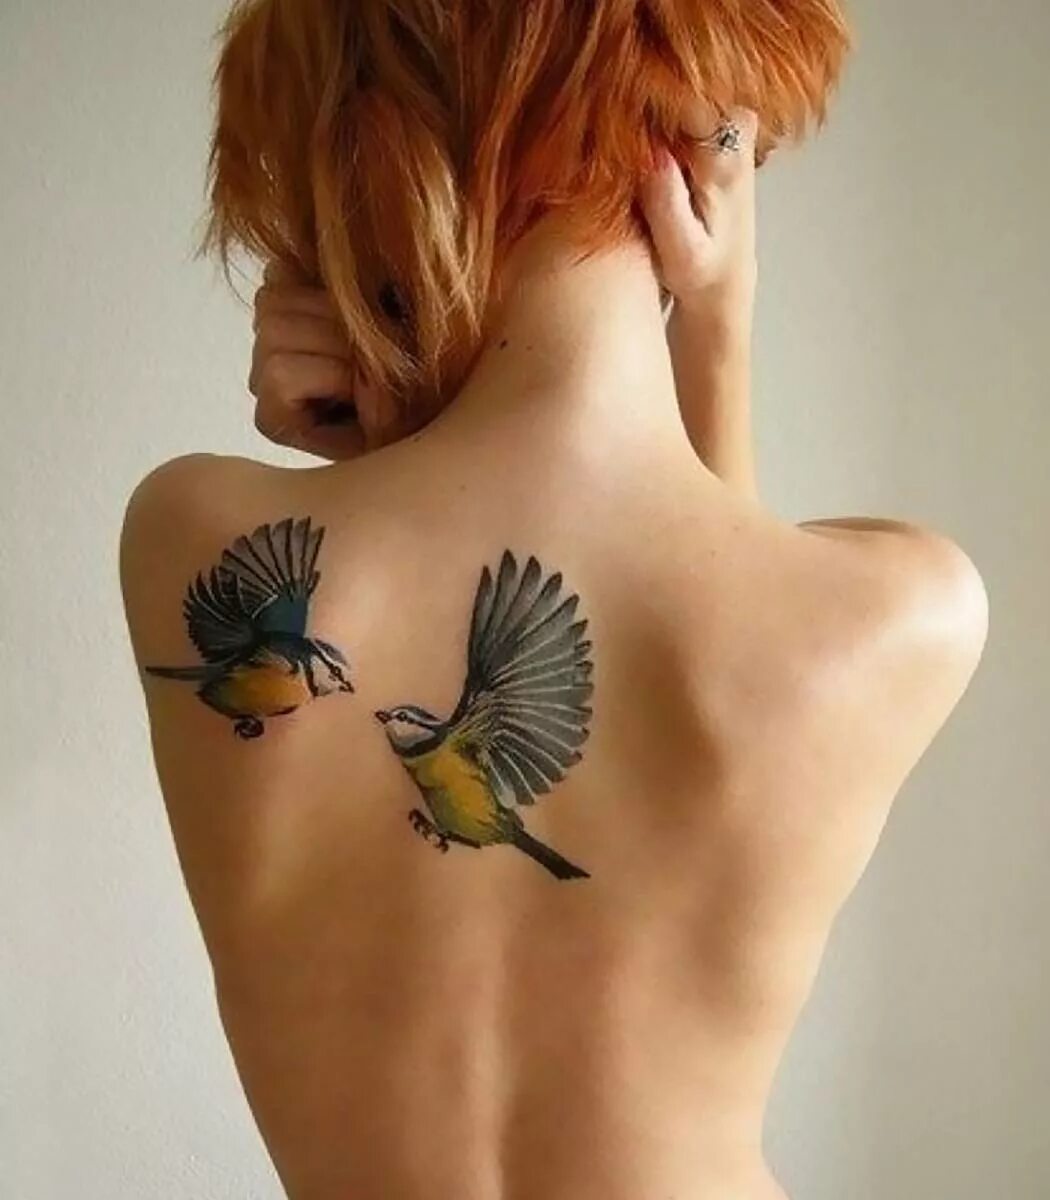 Птица спиной вперед. Тату для девушек. Красивые женские Татуировки. Тату на лопатке. Тату птицы.